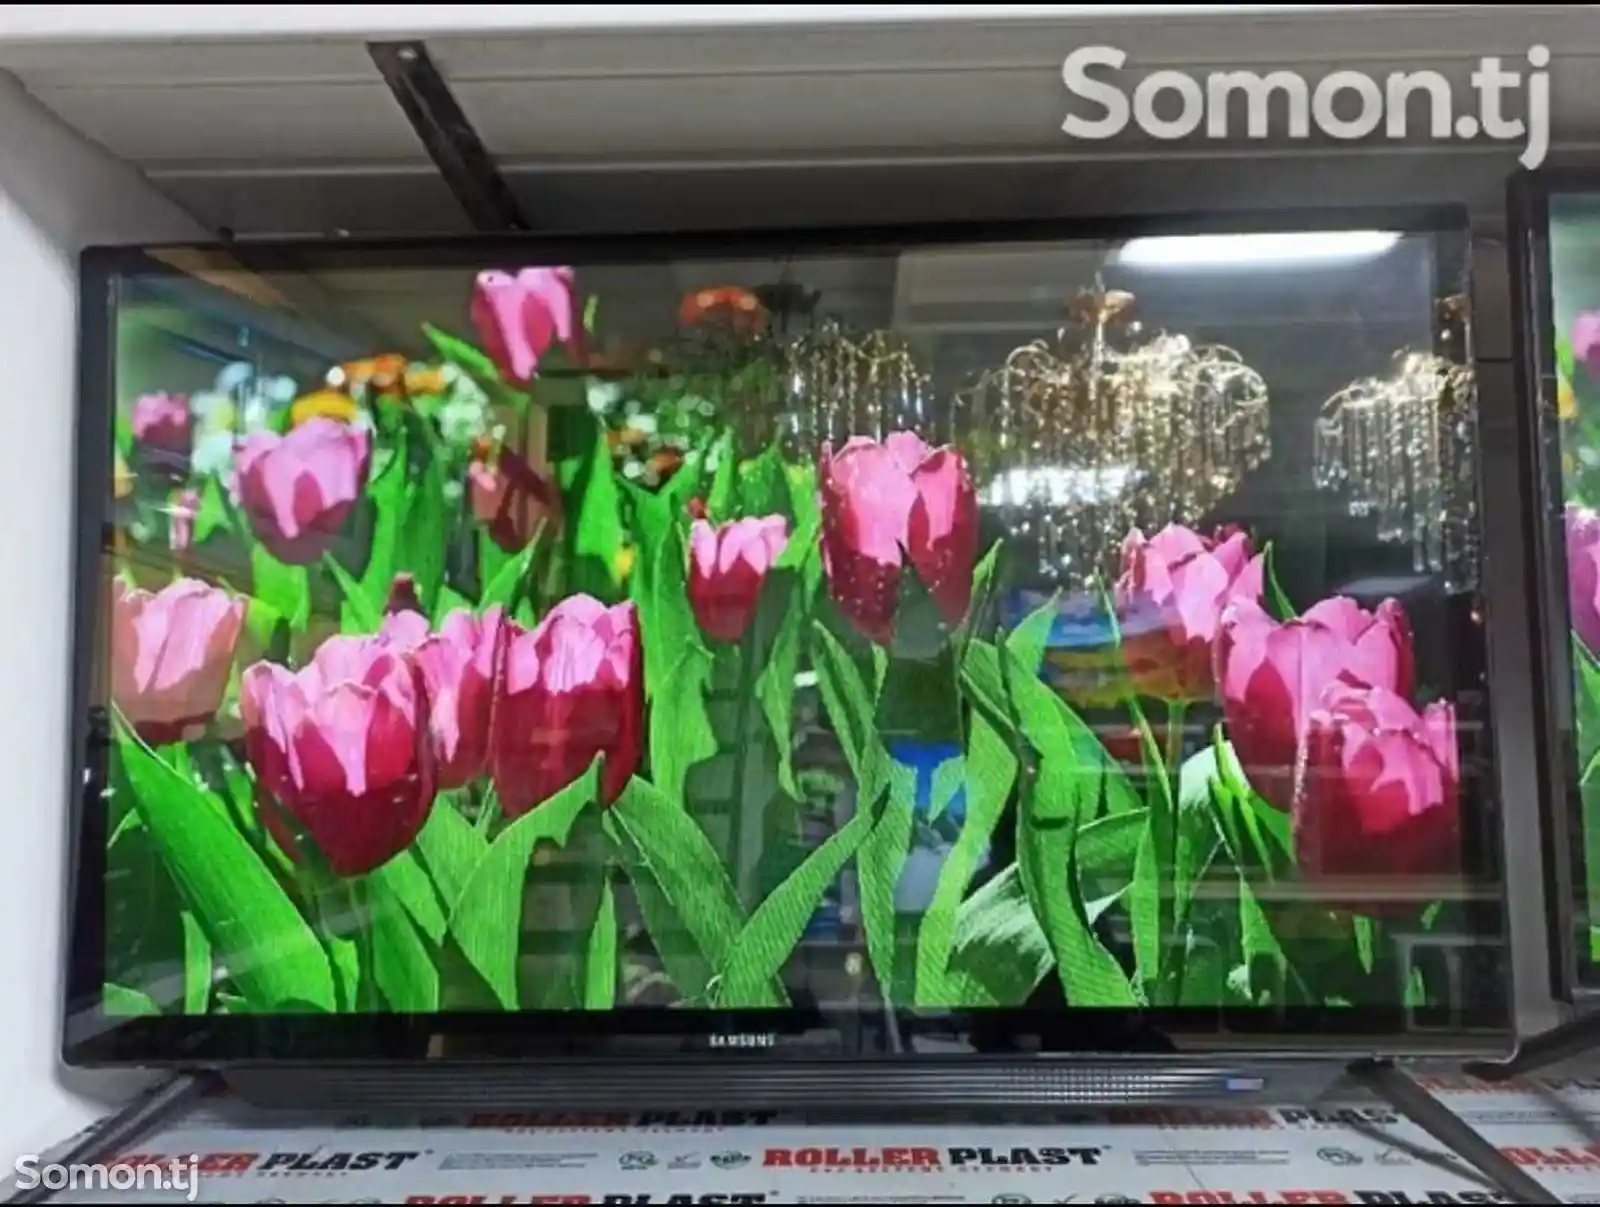 Телевизор Samsung 35-2